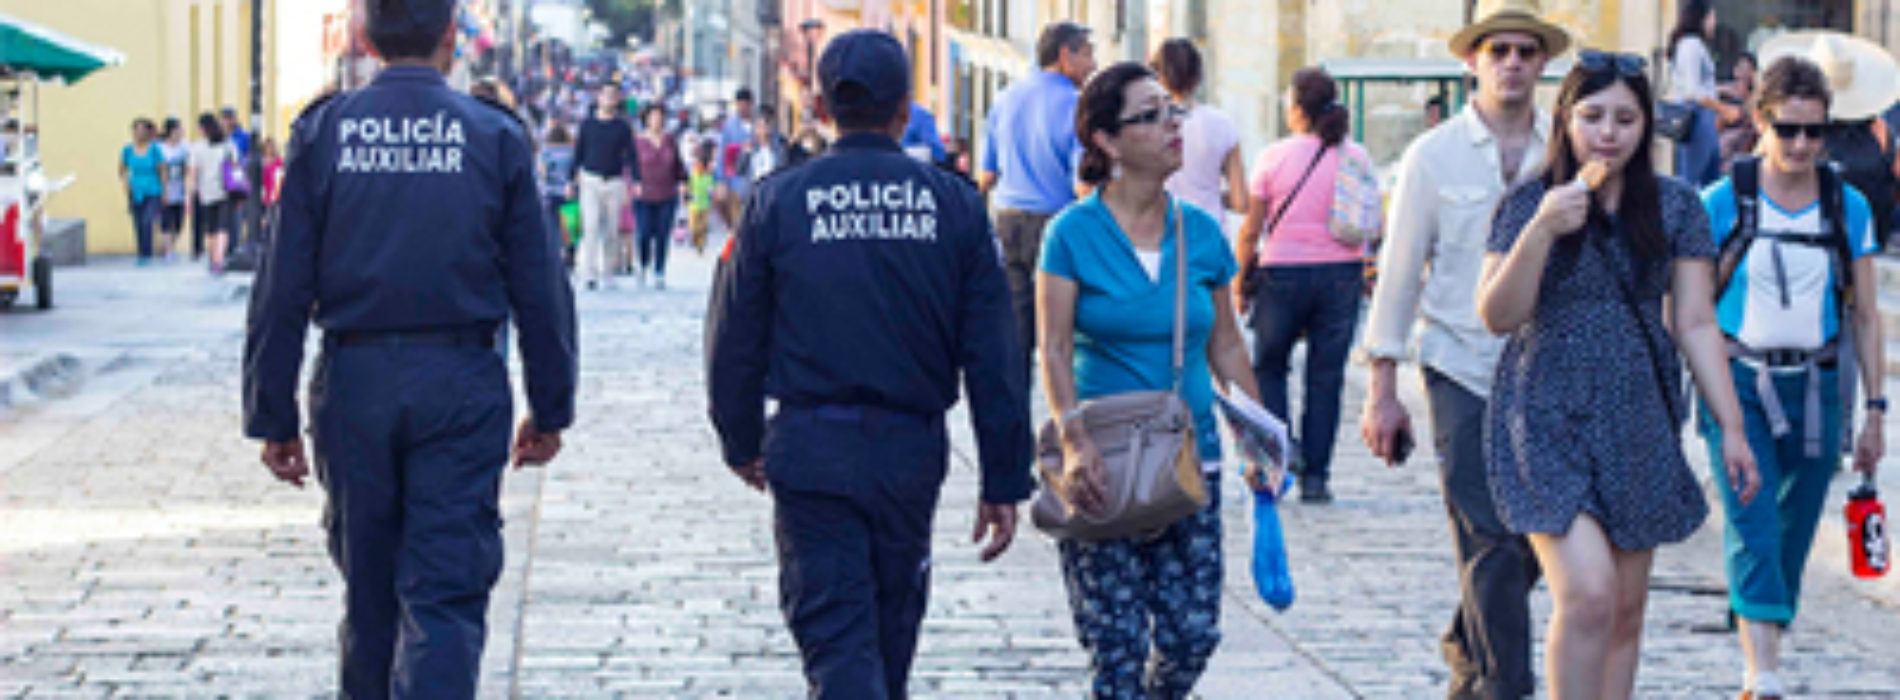 Policía Auxiliar, una institución confiable al servicio de Oaxaca